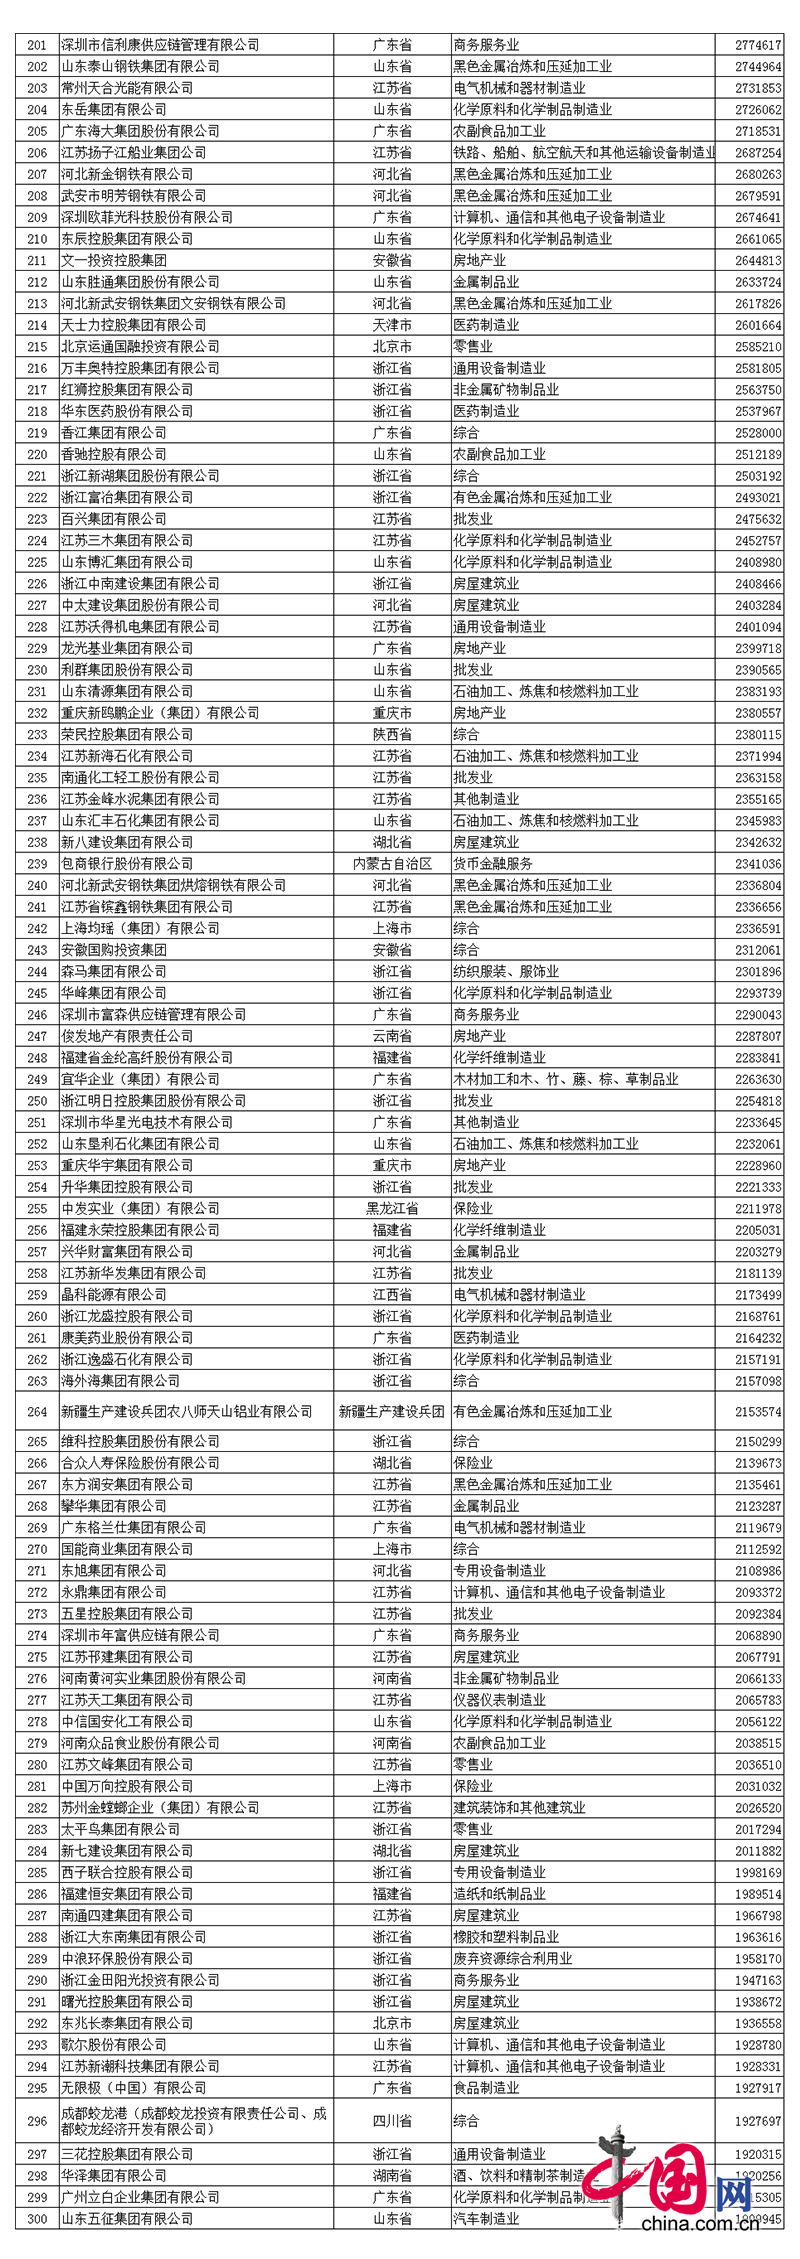 2017中国民营企业500强名单中网信购彩welcome排名第390名